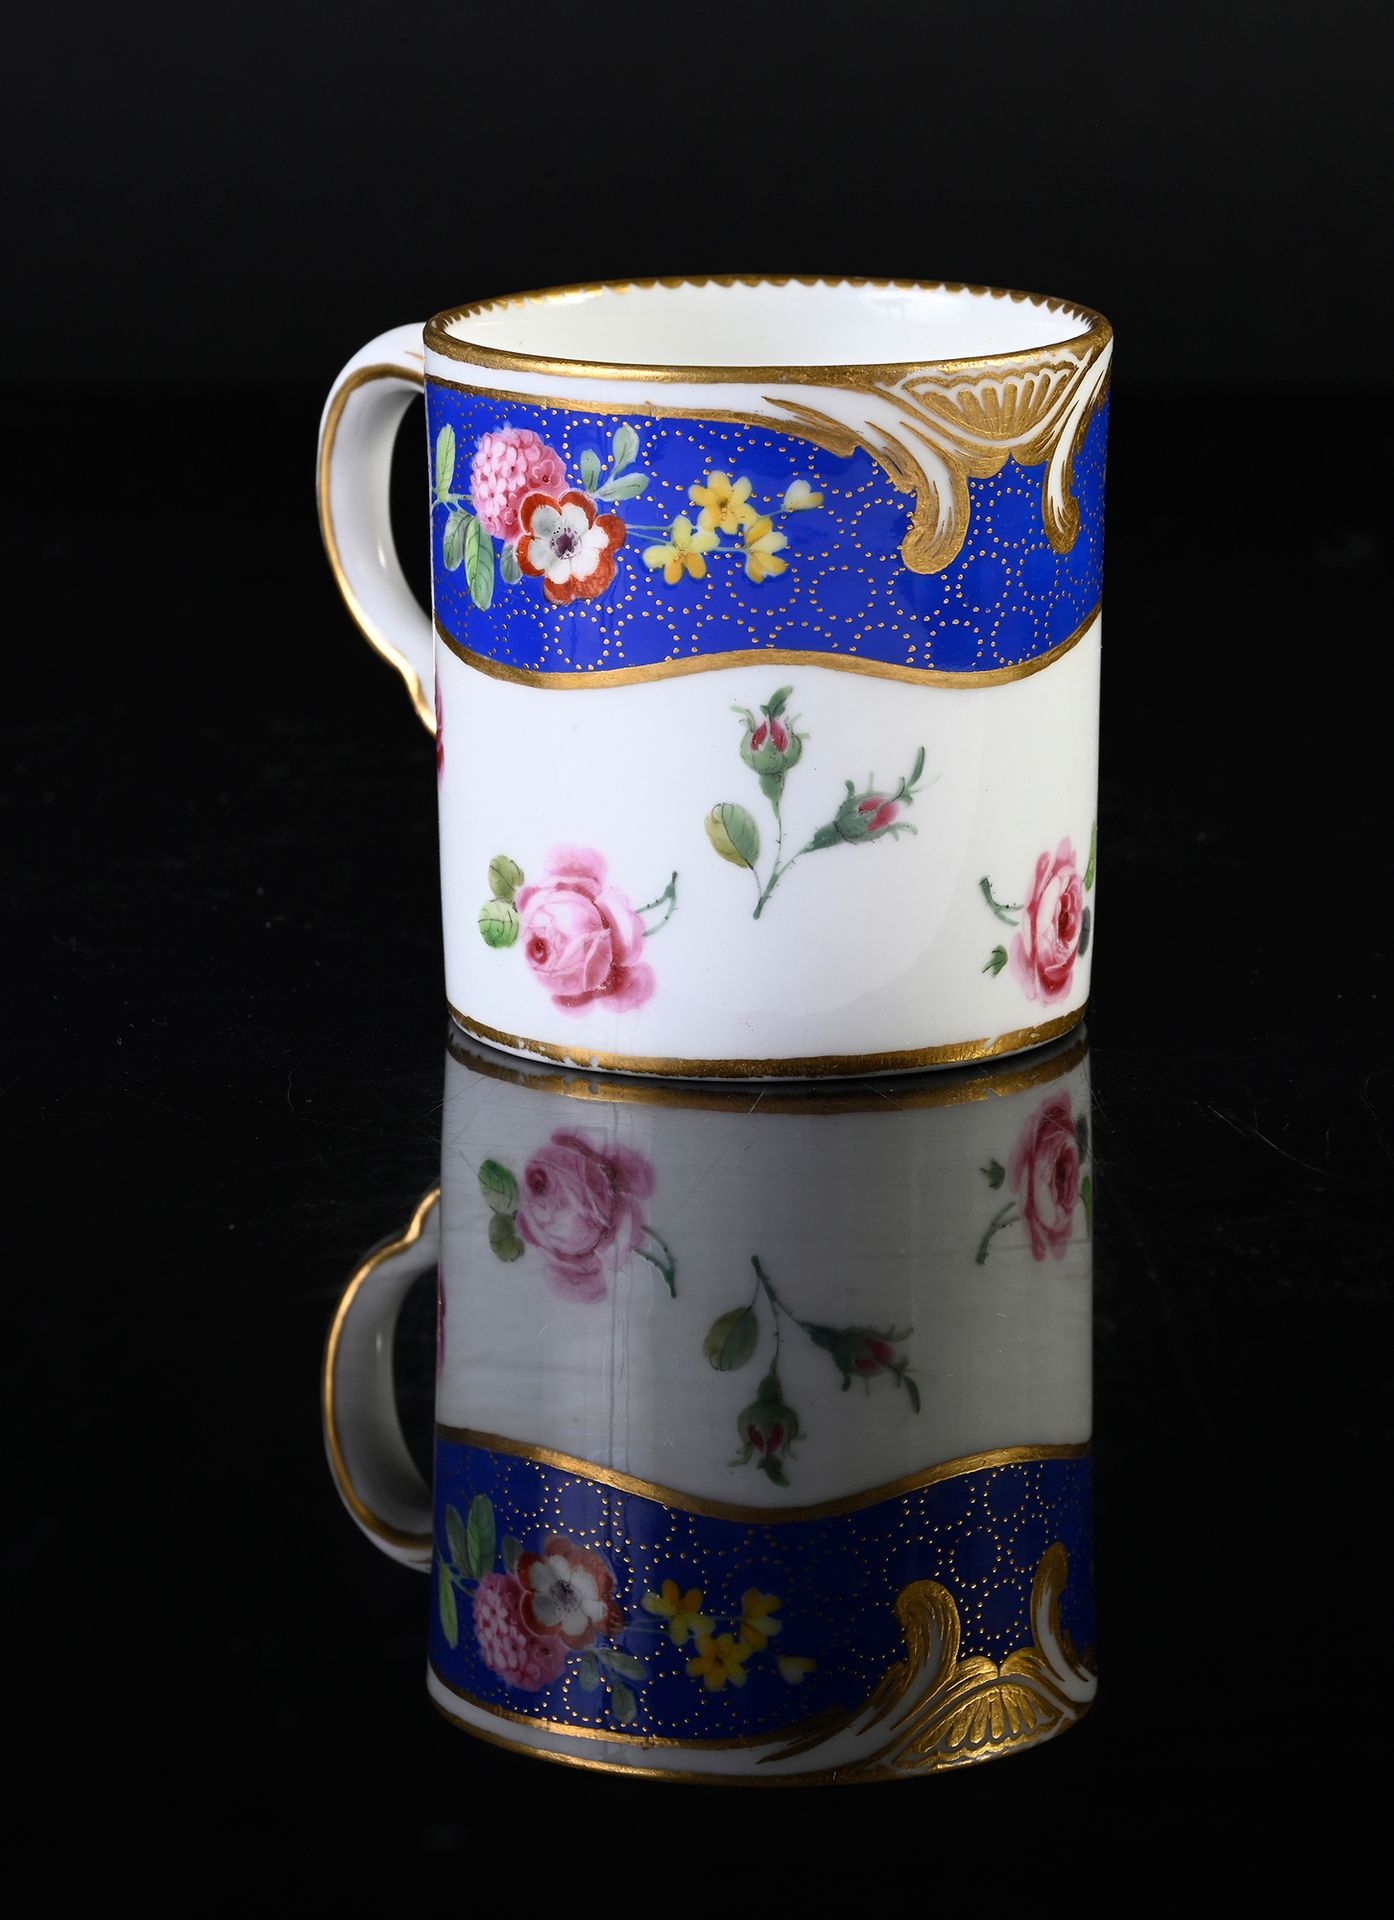 Null 18世纪塞夫勒瓷器高脚杯（第三尺寸）
18世纪的塞夫勒瓷器
蓝色标记，有两个交错的L，可能是老梅里奥和布瓦拉夫人的标记
带有多色和金色的装饰，在 "F&hellip;